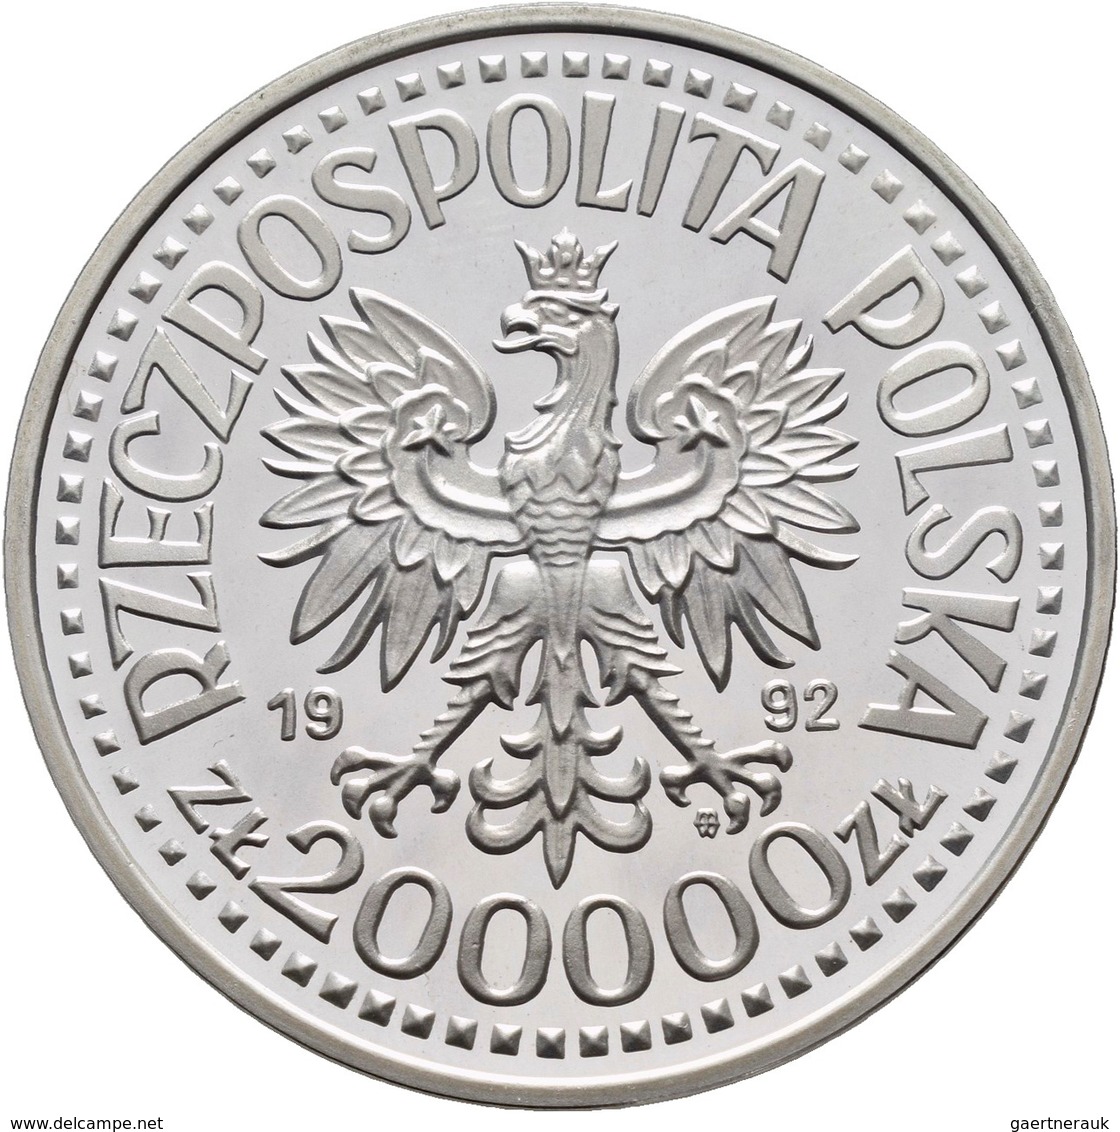 Polen: 200.000 Zlotych 1992, Wladyslaw III Warnenczyk, KM# Y 253. Polierte Platte. - Pologne